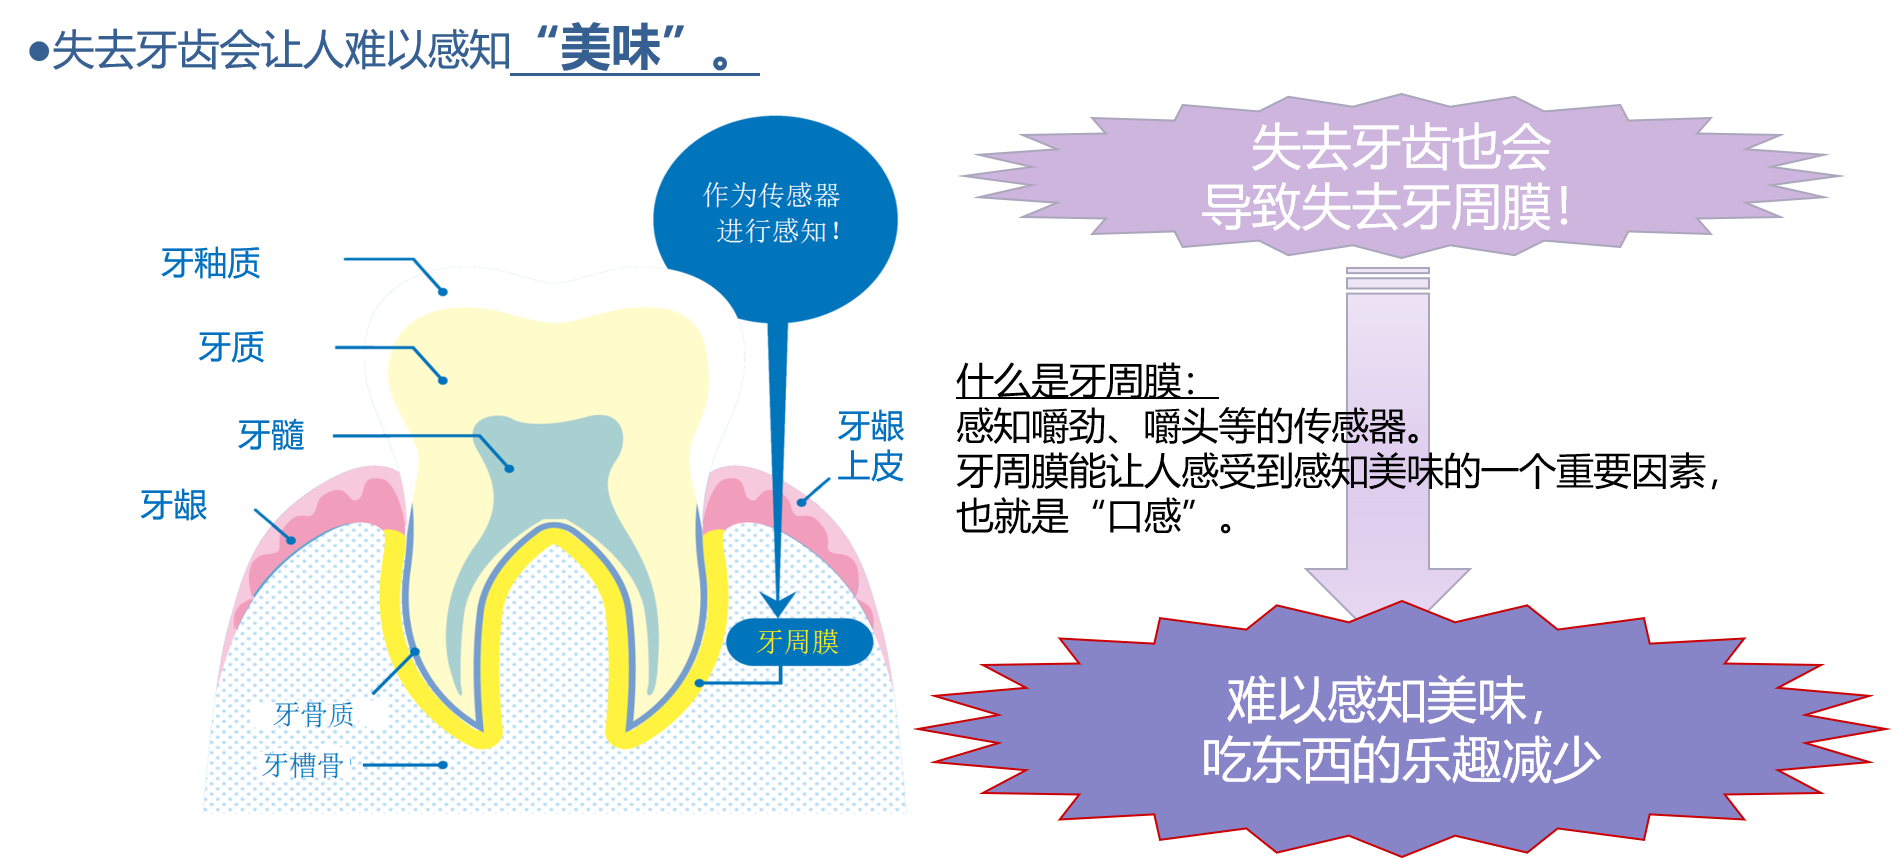 告别“老掉牙”！牙医珍藏的20条护牙知识！-北京达宝利健康科技有限公司